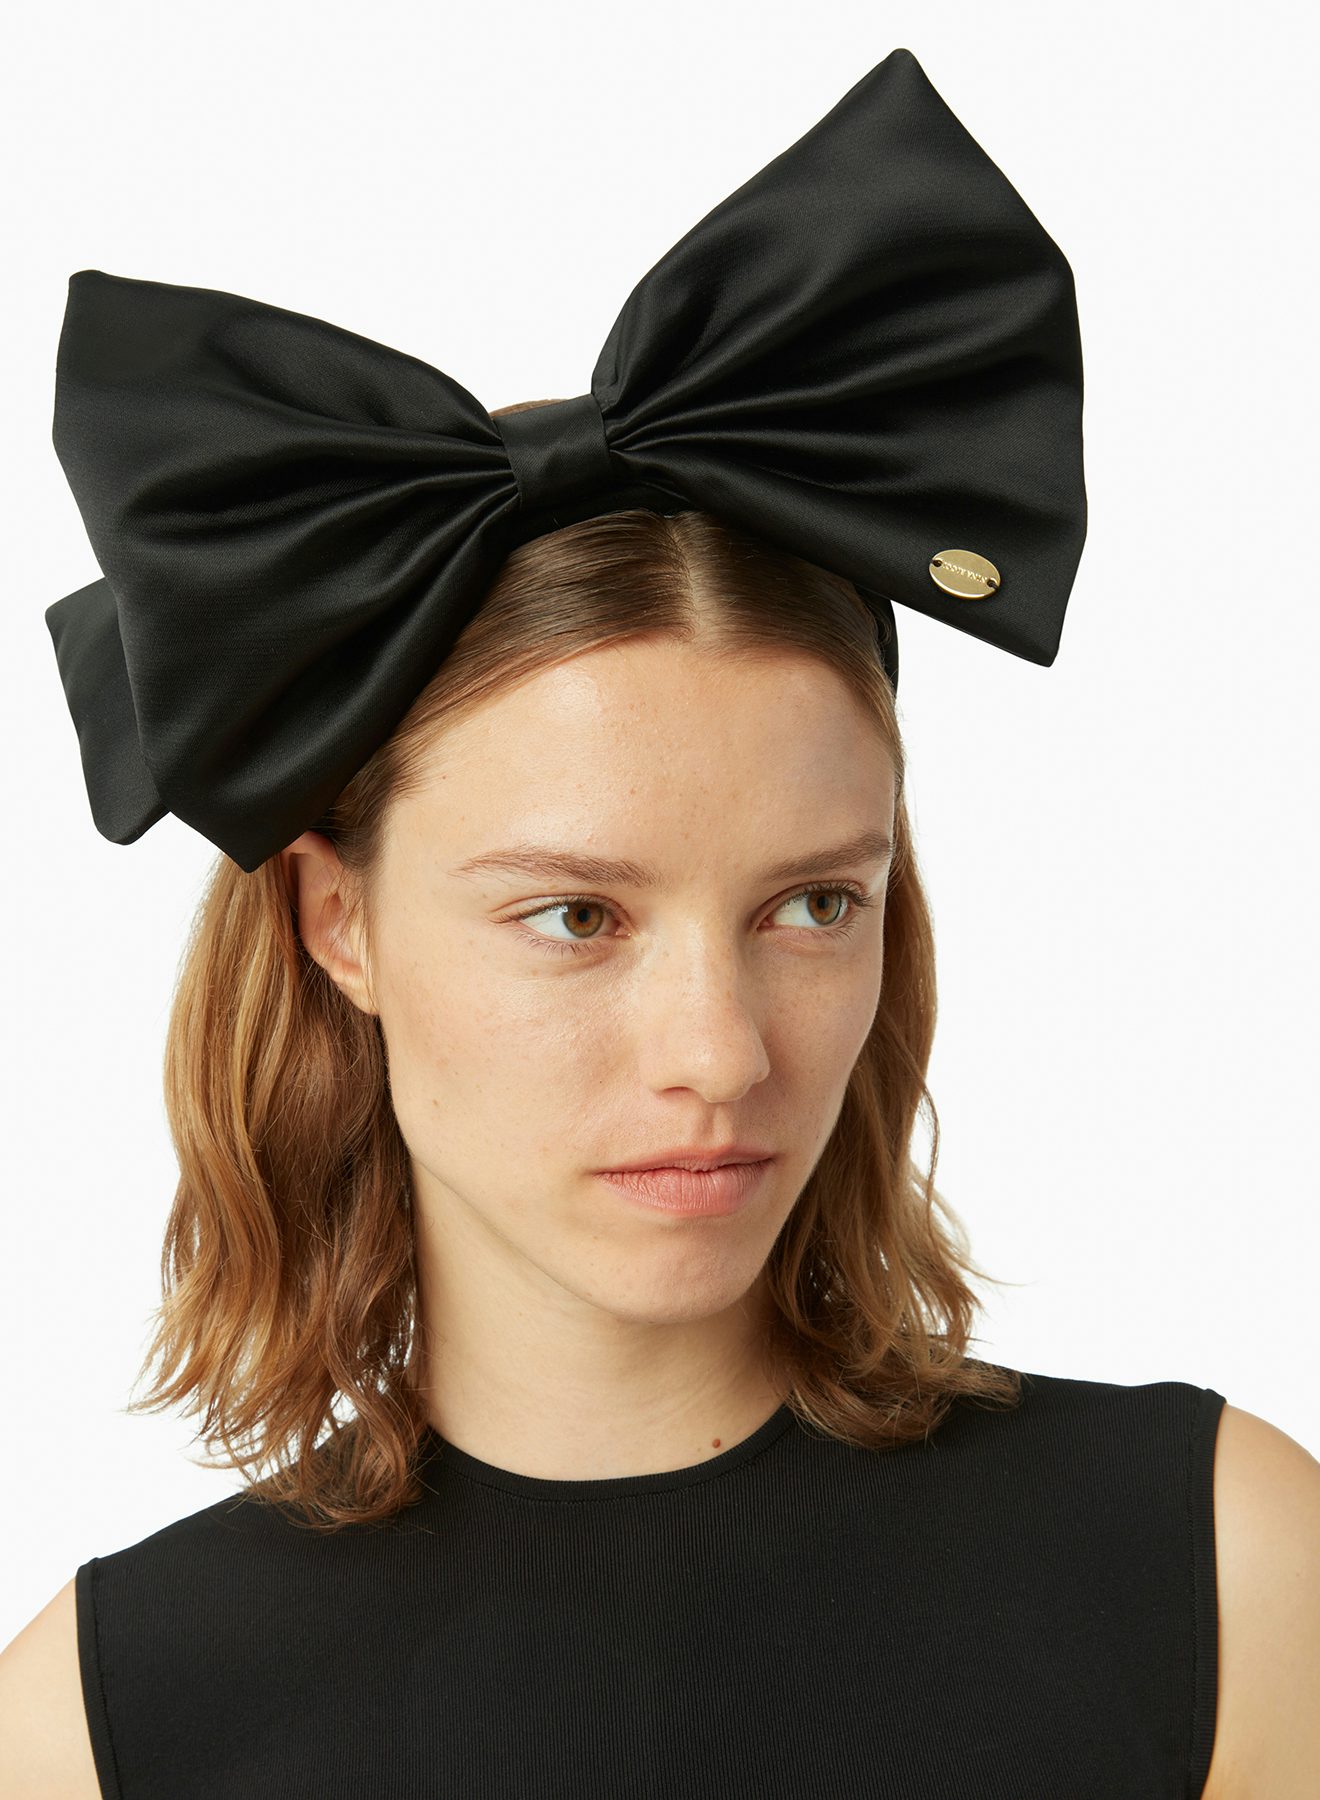 Satin headband with bow in black - Nina Ricci